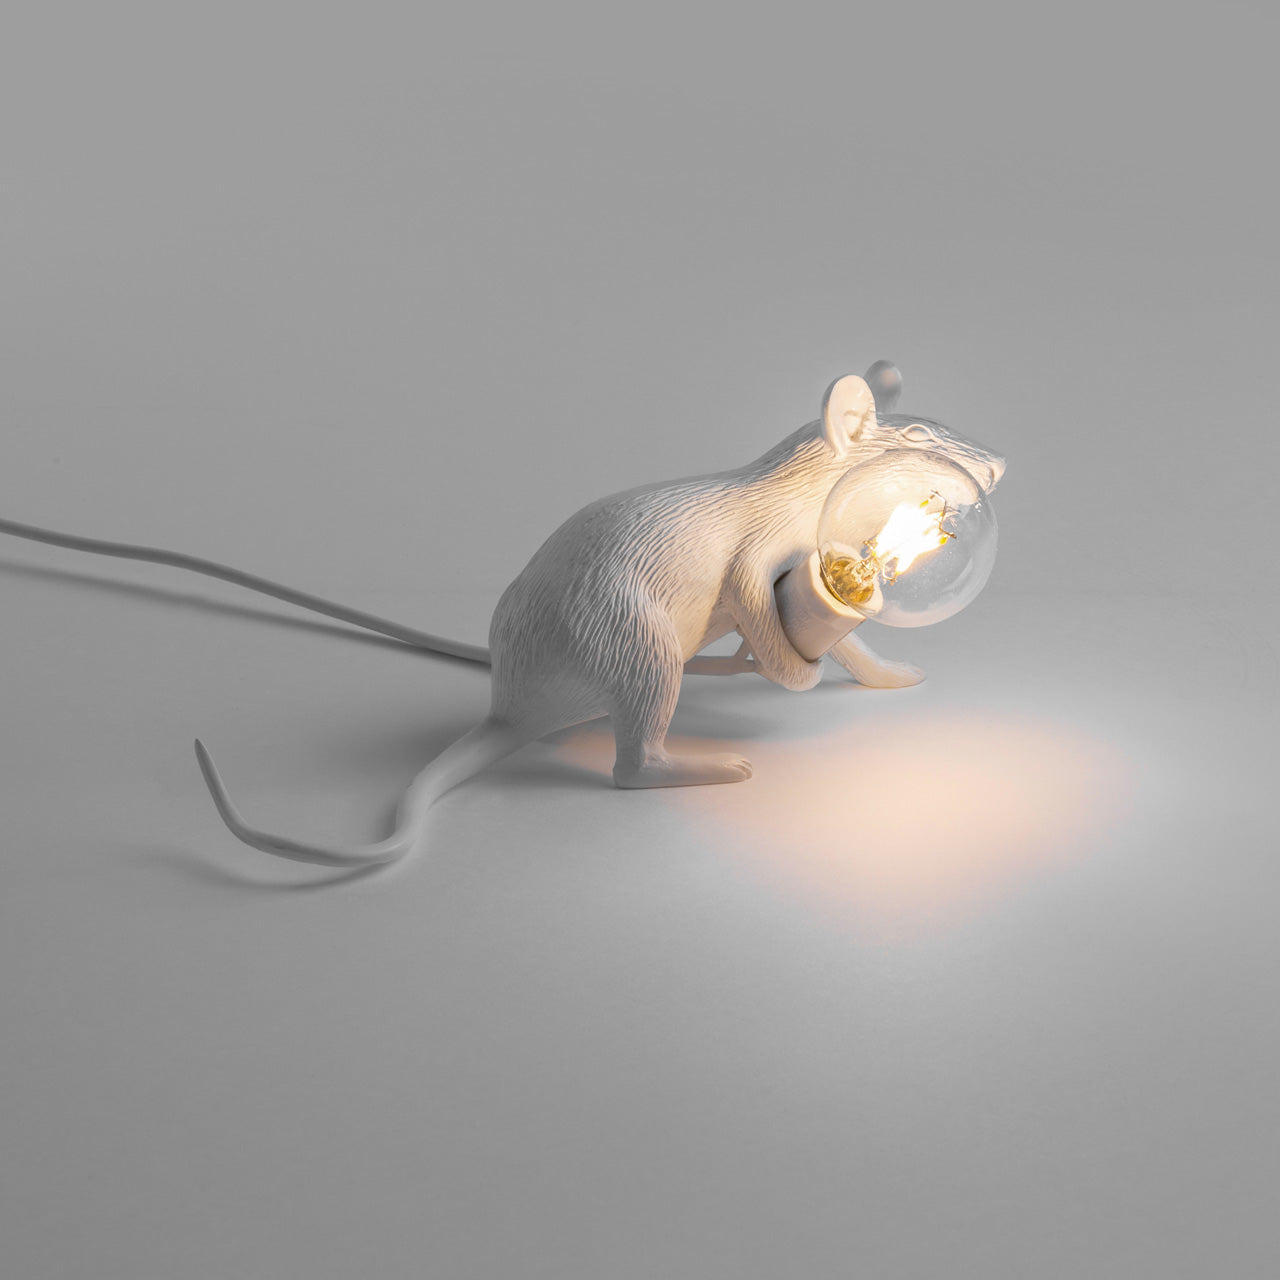 Mouse Lamp 3 - Lampe à Poser Souris Allongée